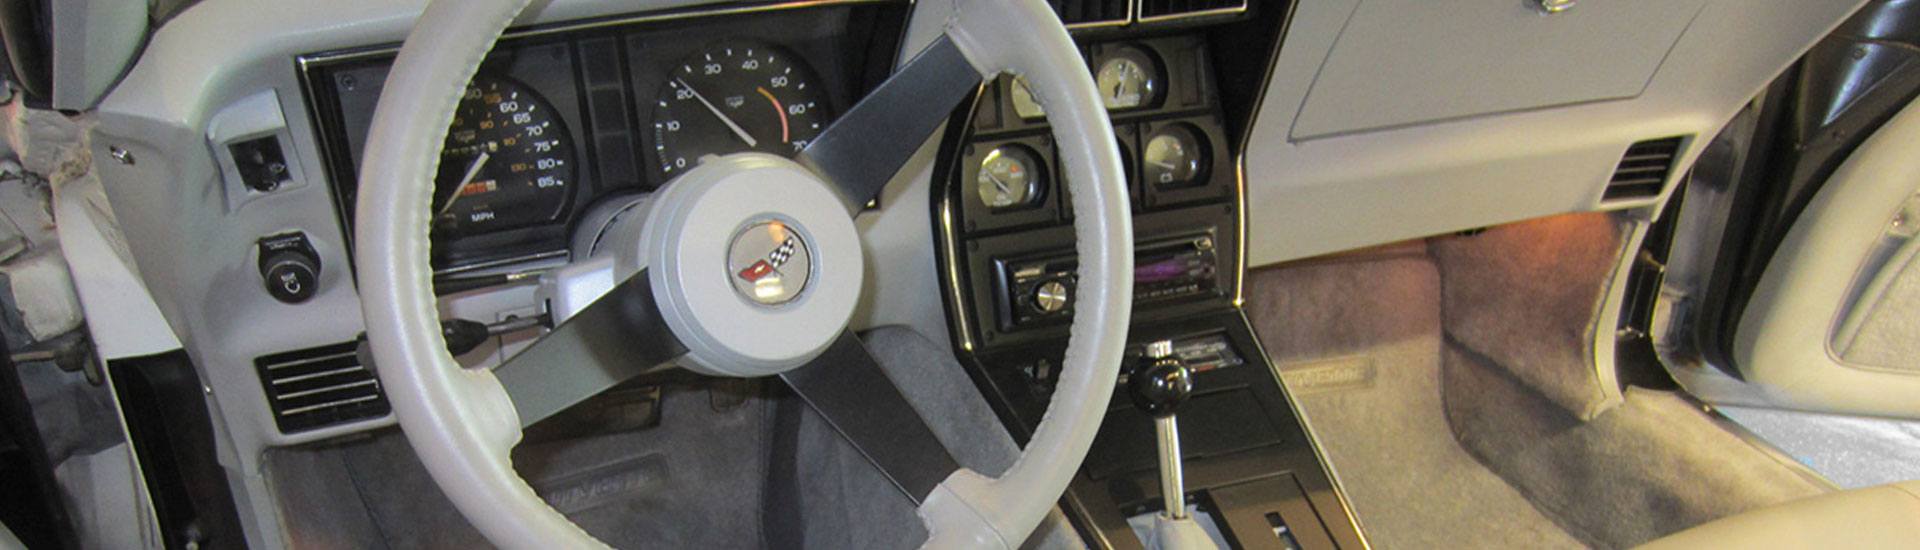 1982 Chevrolet Corvette Dash Kits